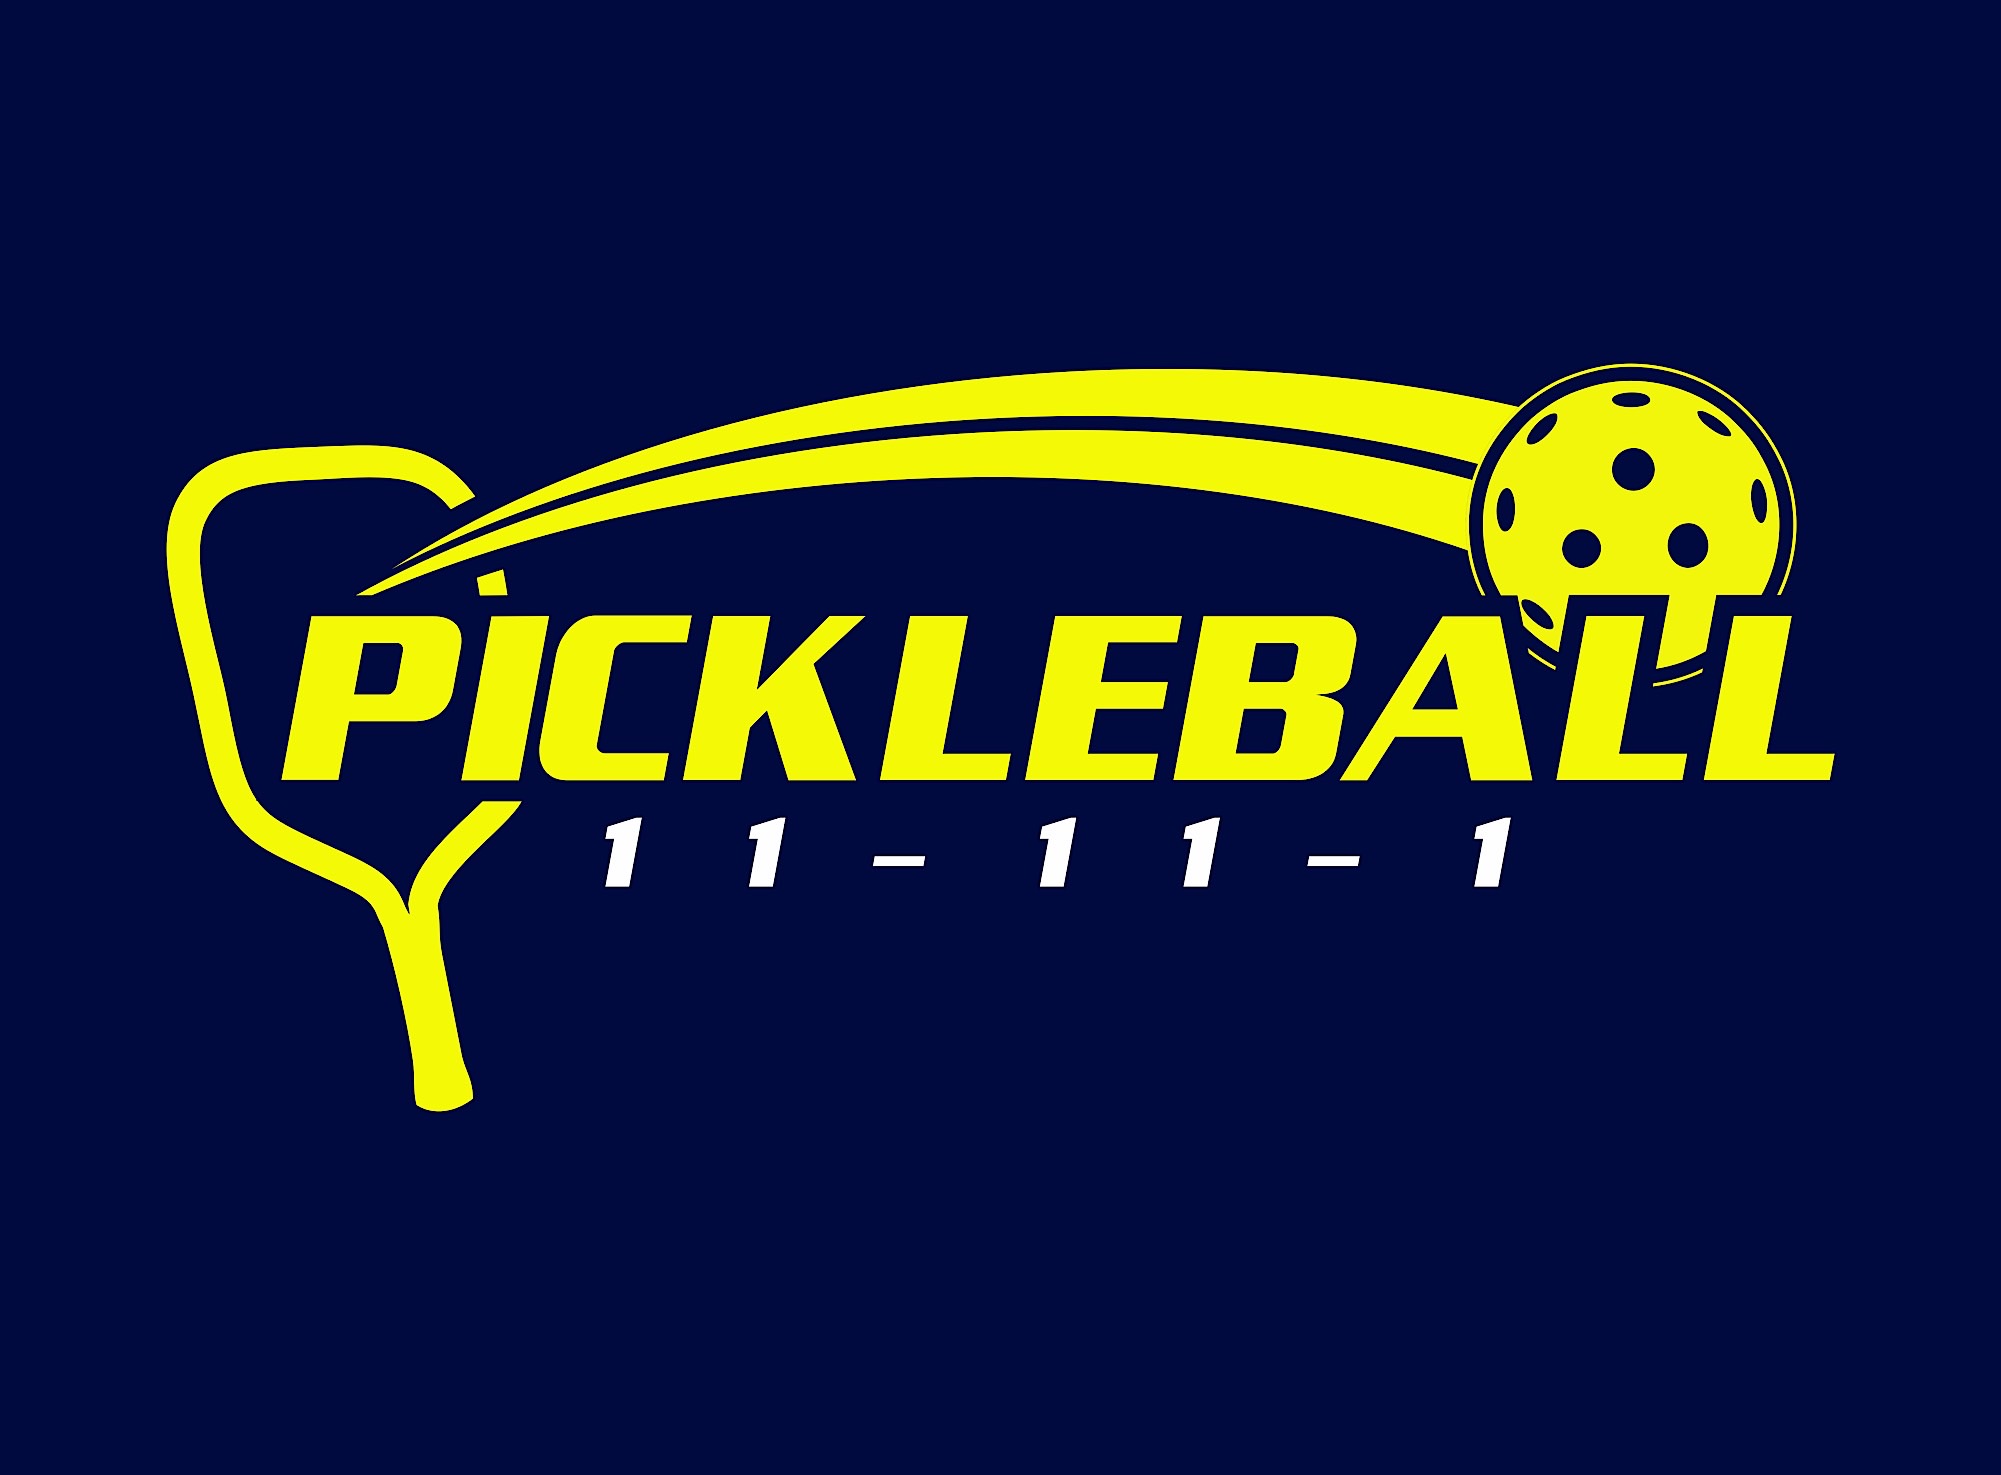 Pickleball 11-1-1 logo